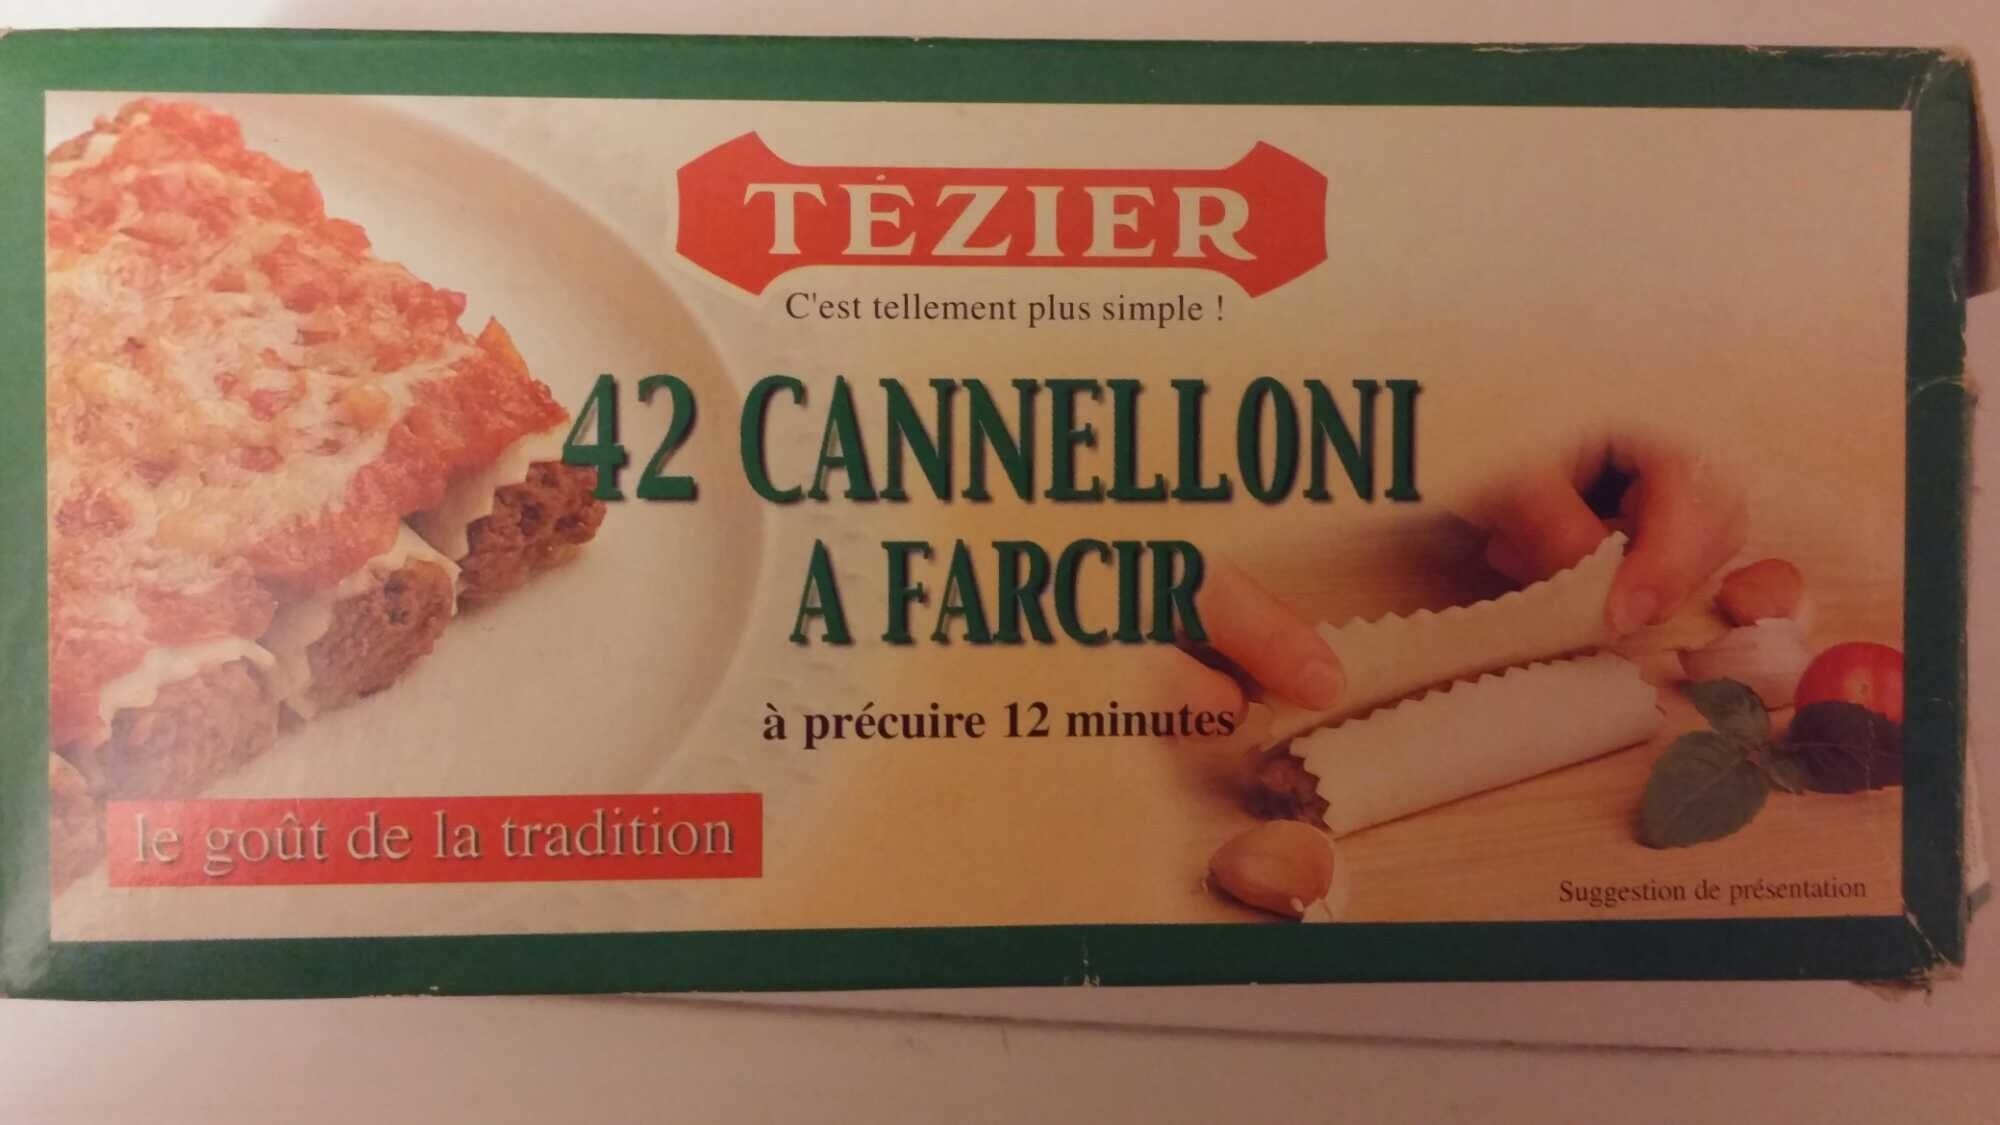 42 Cannelloni à farcir - Tableau nutritionnel